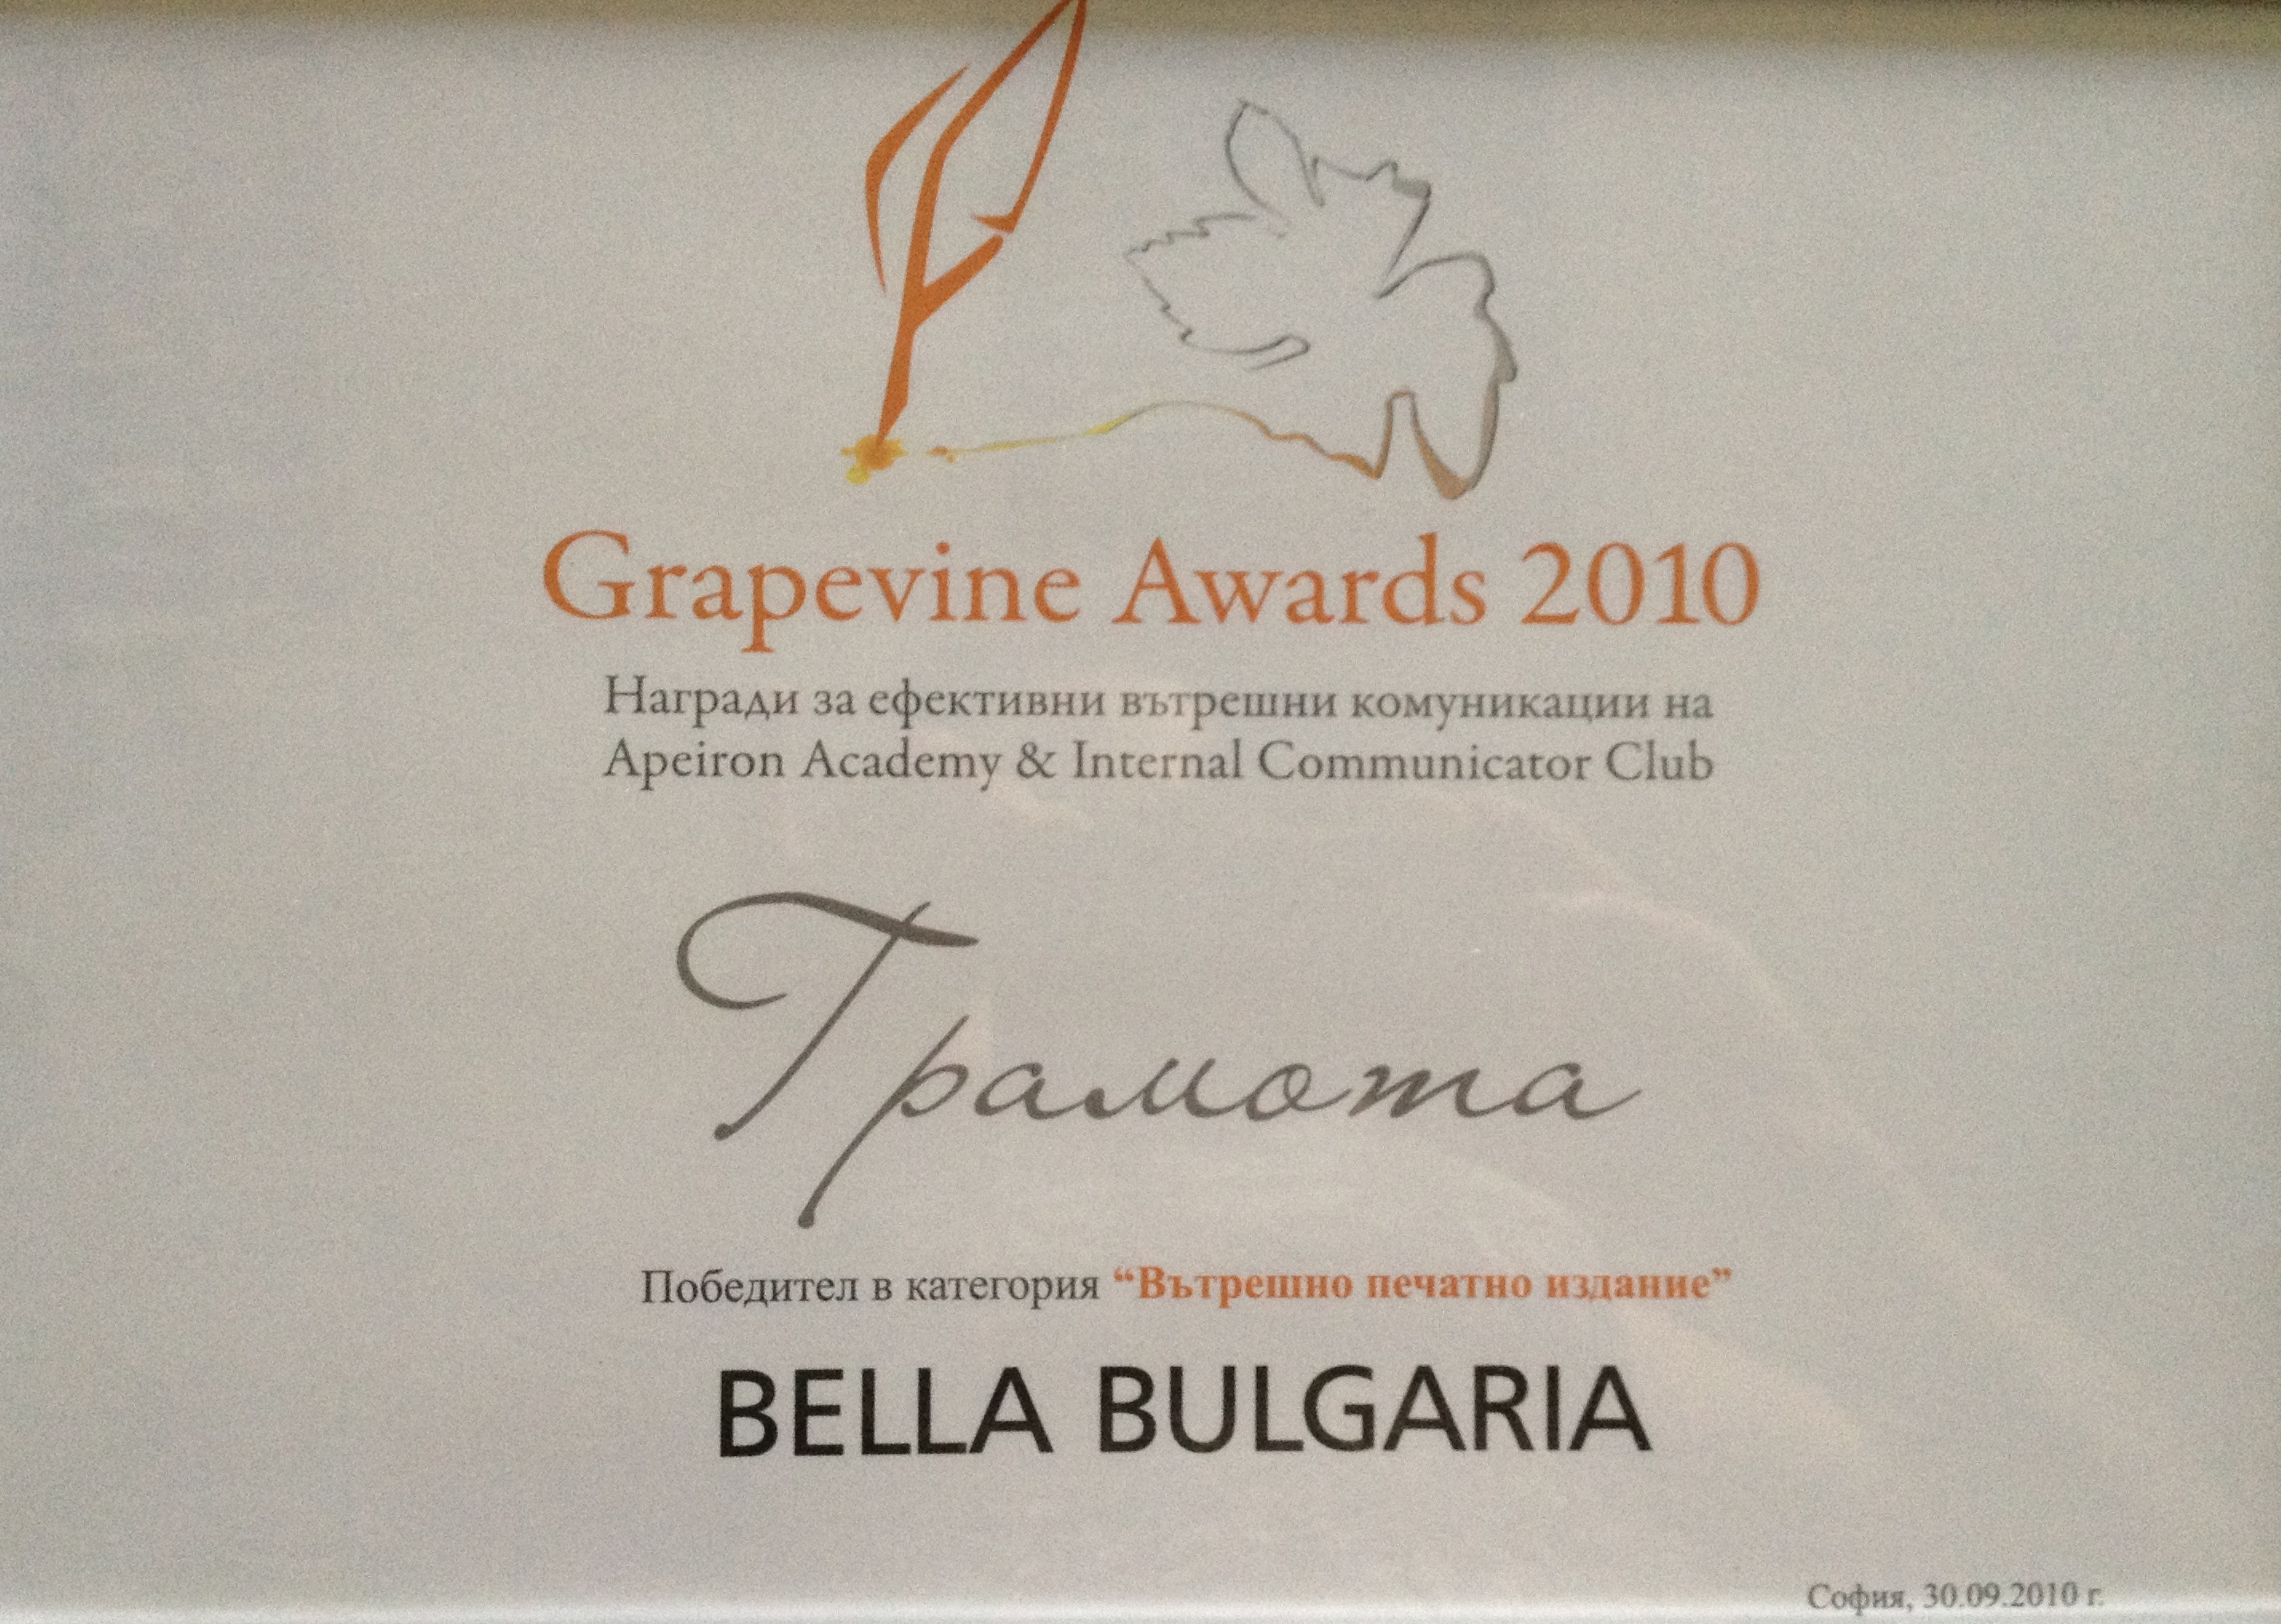 „Белла Инсайд” - № 1 вътрешно печатно издание (Grapevine Awards, 2010)